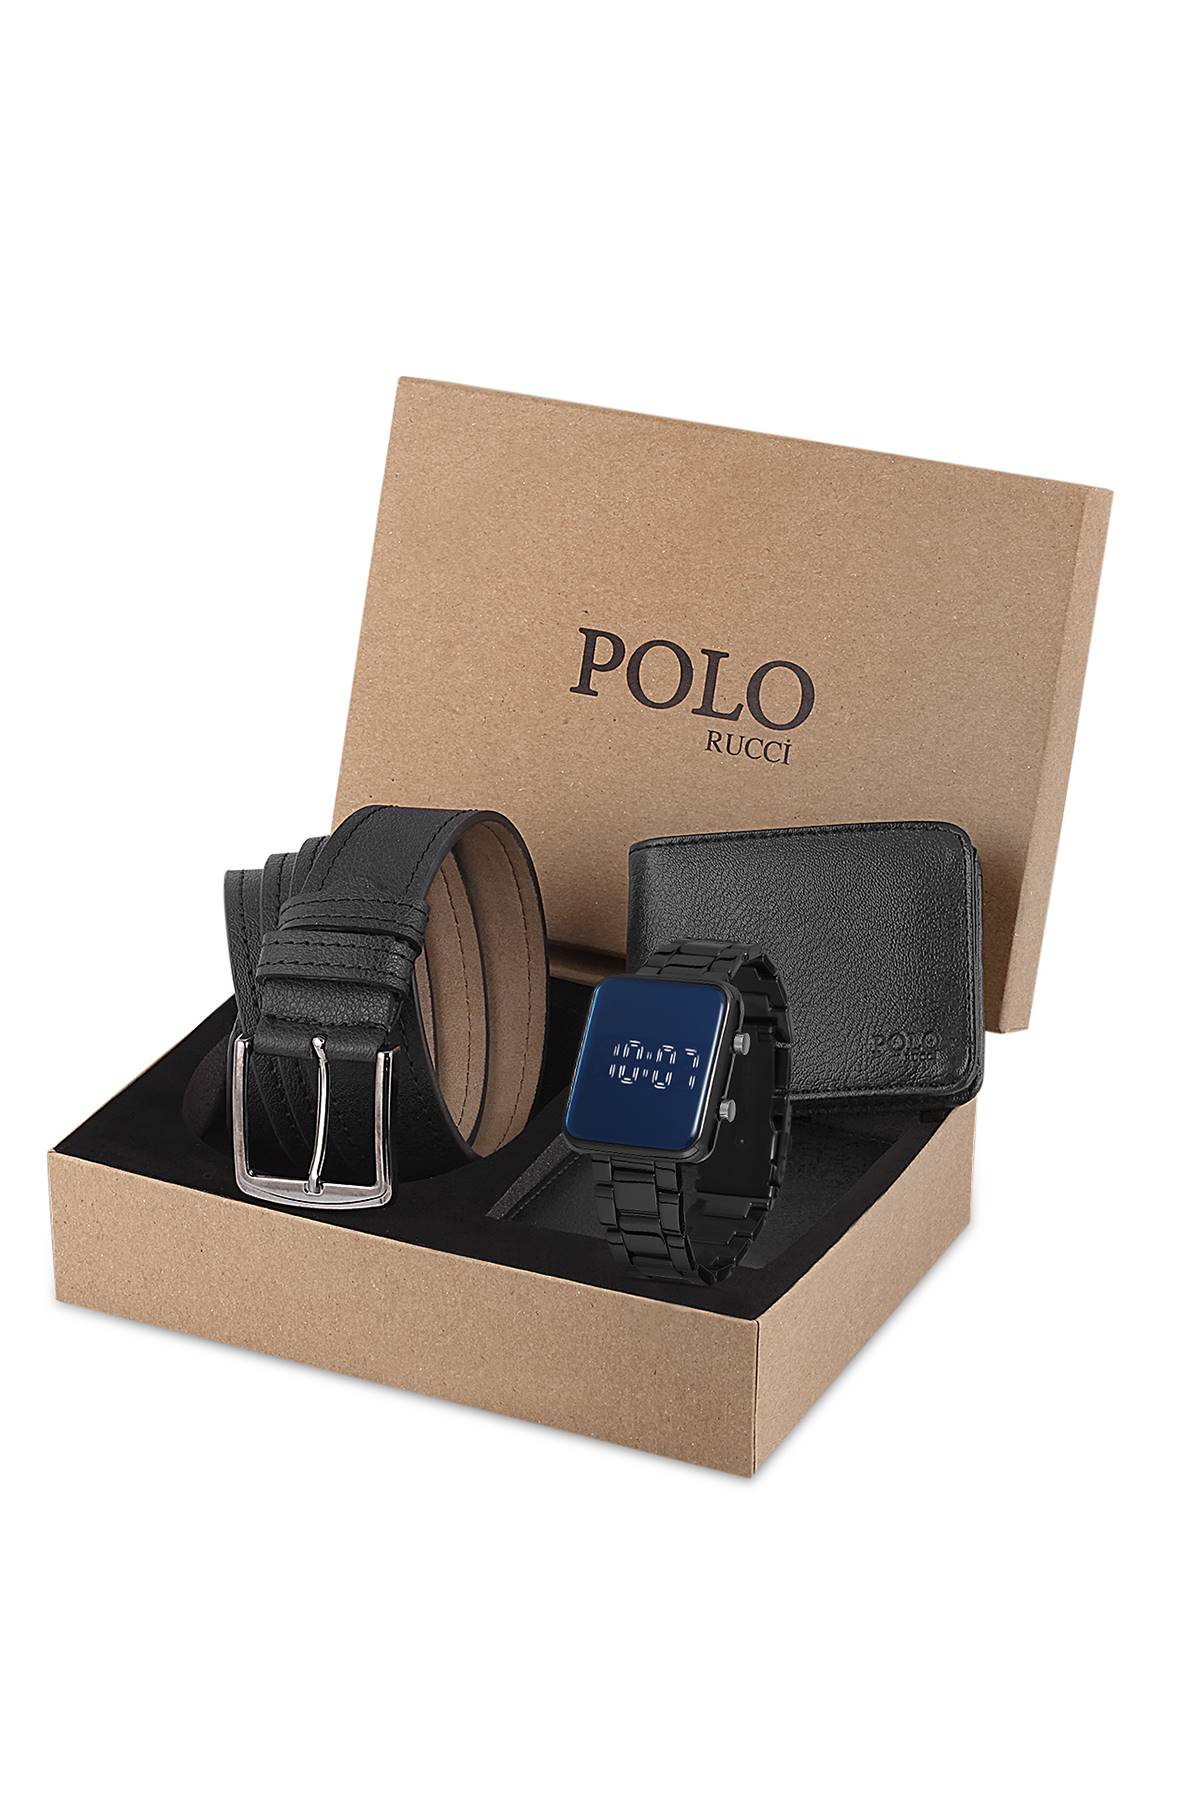 Polo Rucci Erkek Kişiye Özel Kapıda Ödeme Kol Saati Hediye Paketli       PL-0683E1